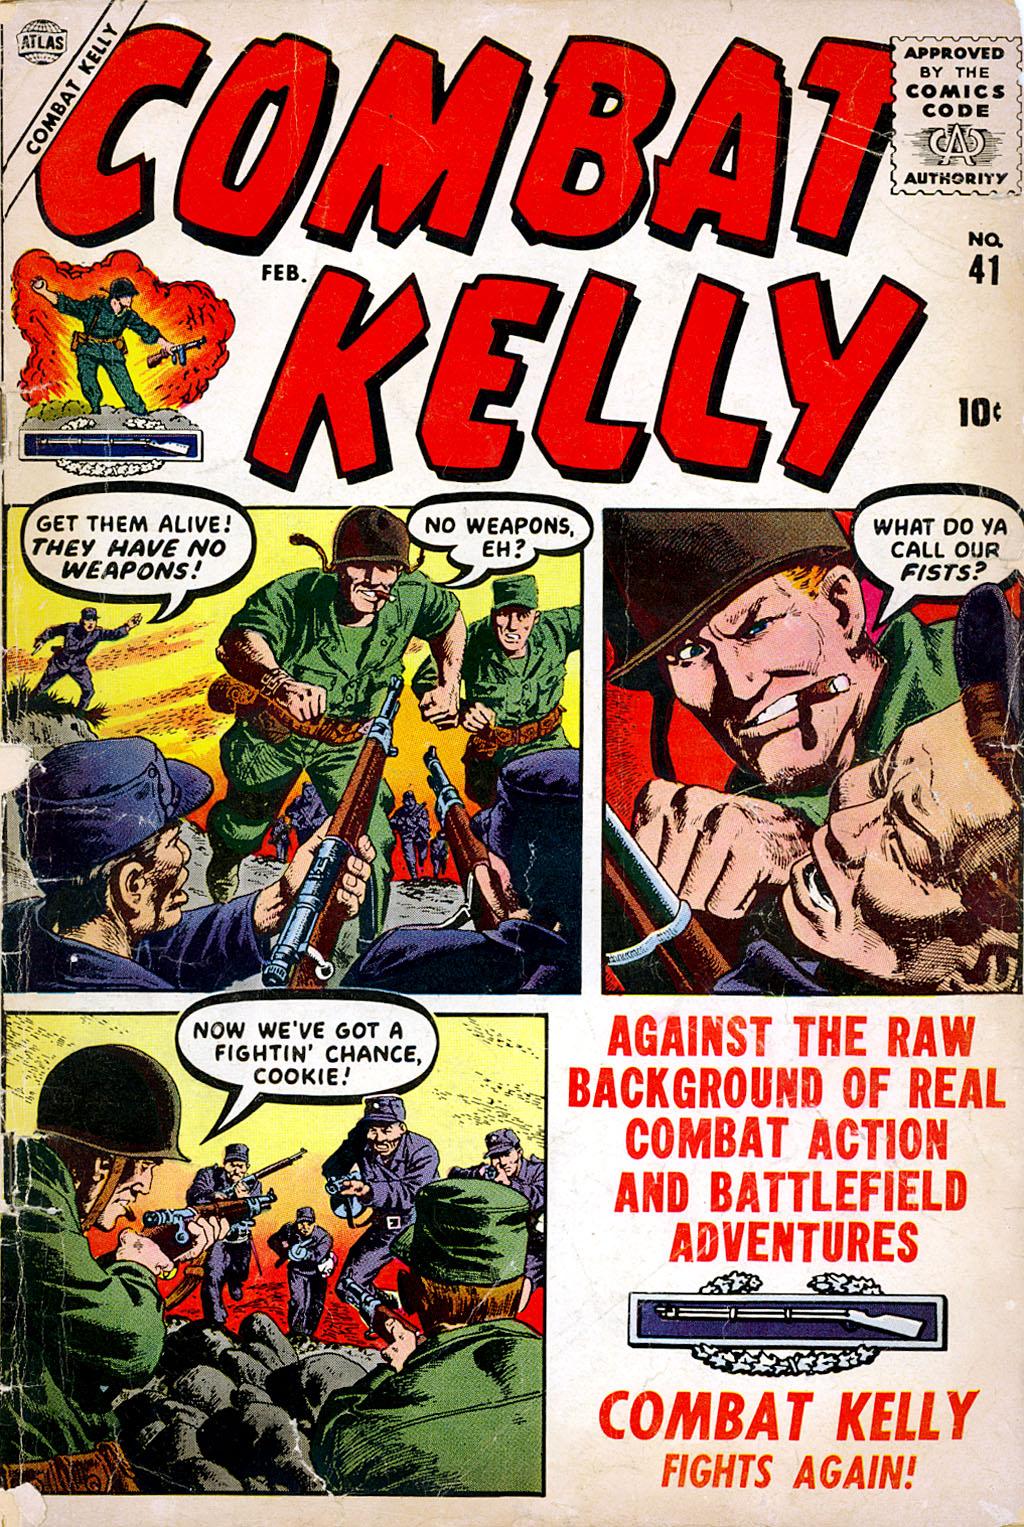 Combat Kelly Vol. 1 #41